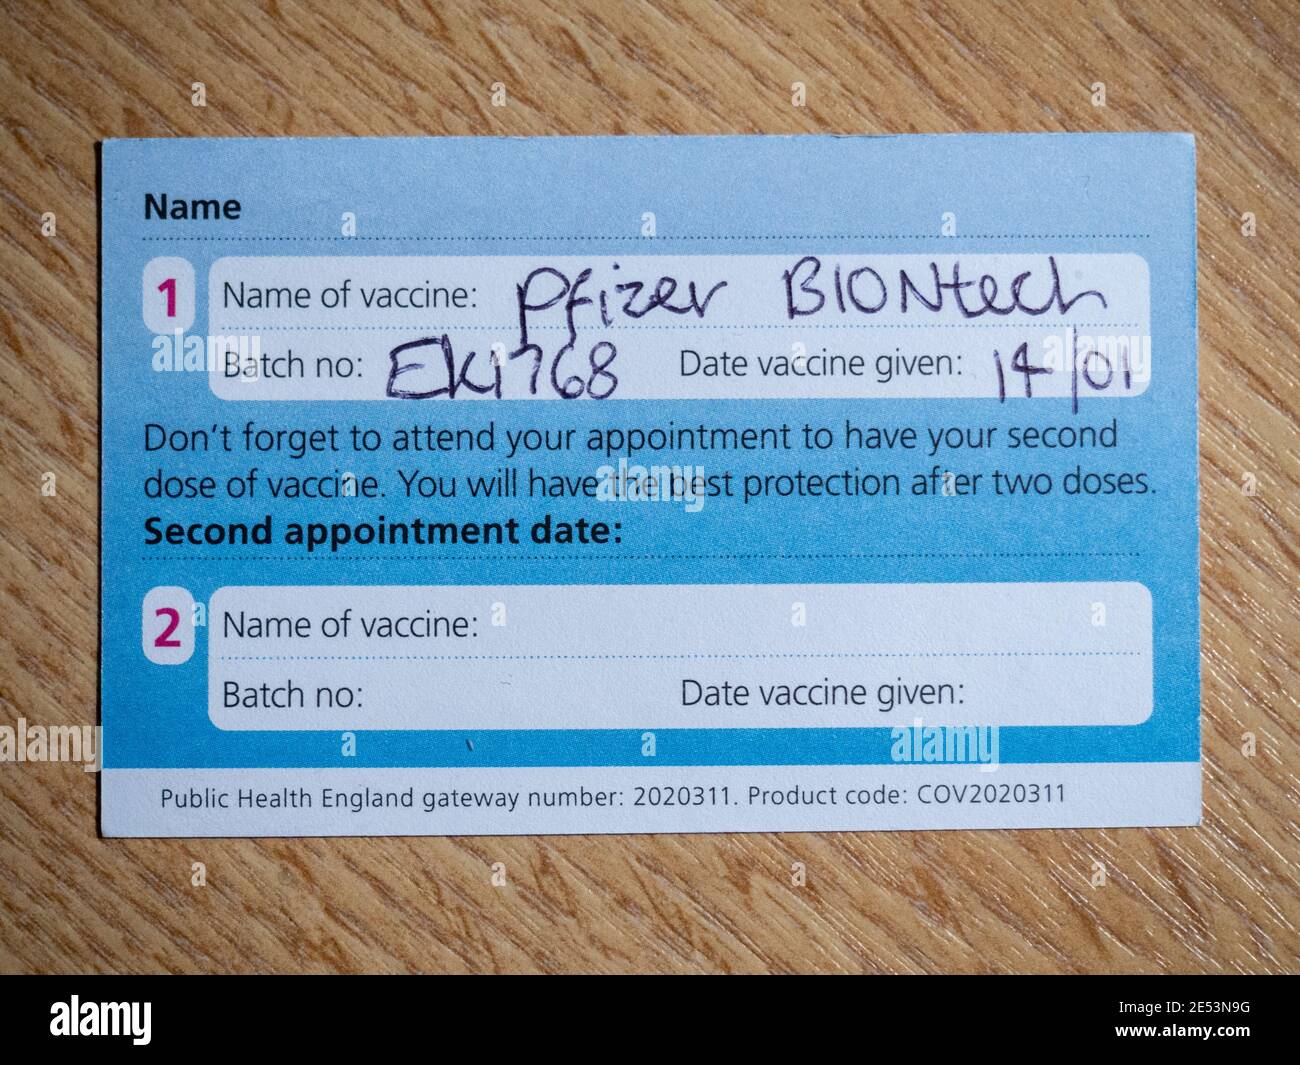 Reverso de una tarjeta de registro de vacunación NHS Covid-19 que indica que el individuo ha recibido la primera dosis de la vacuna Pfizer BioNTech. Foto de stock